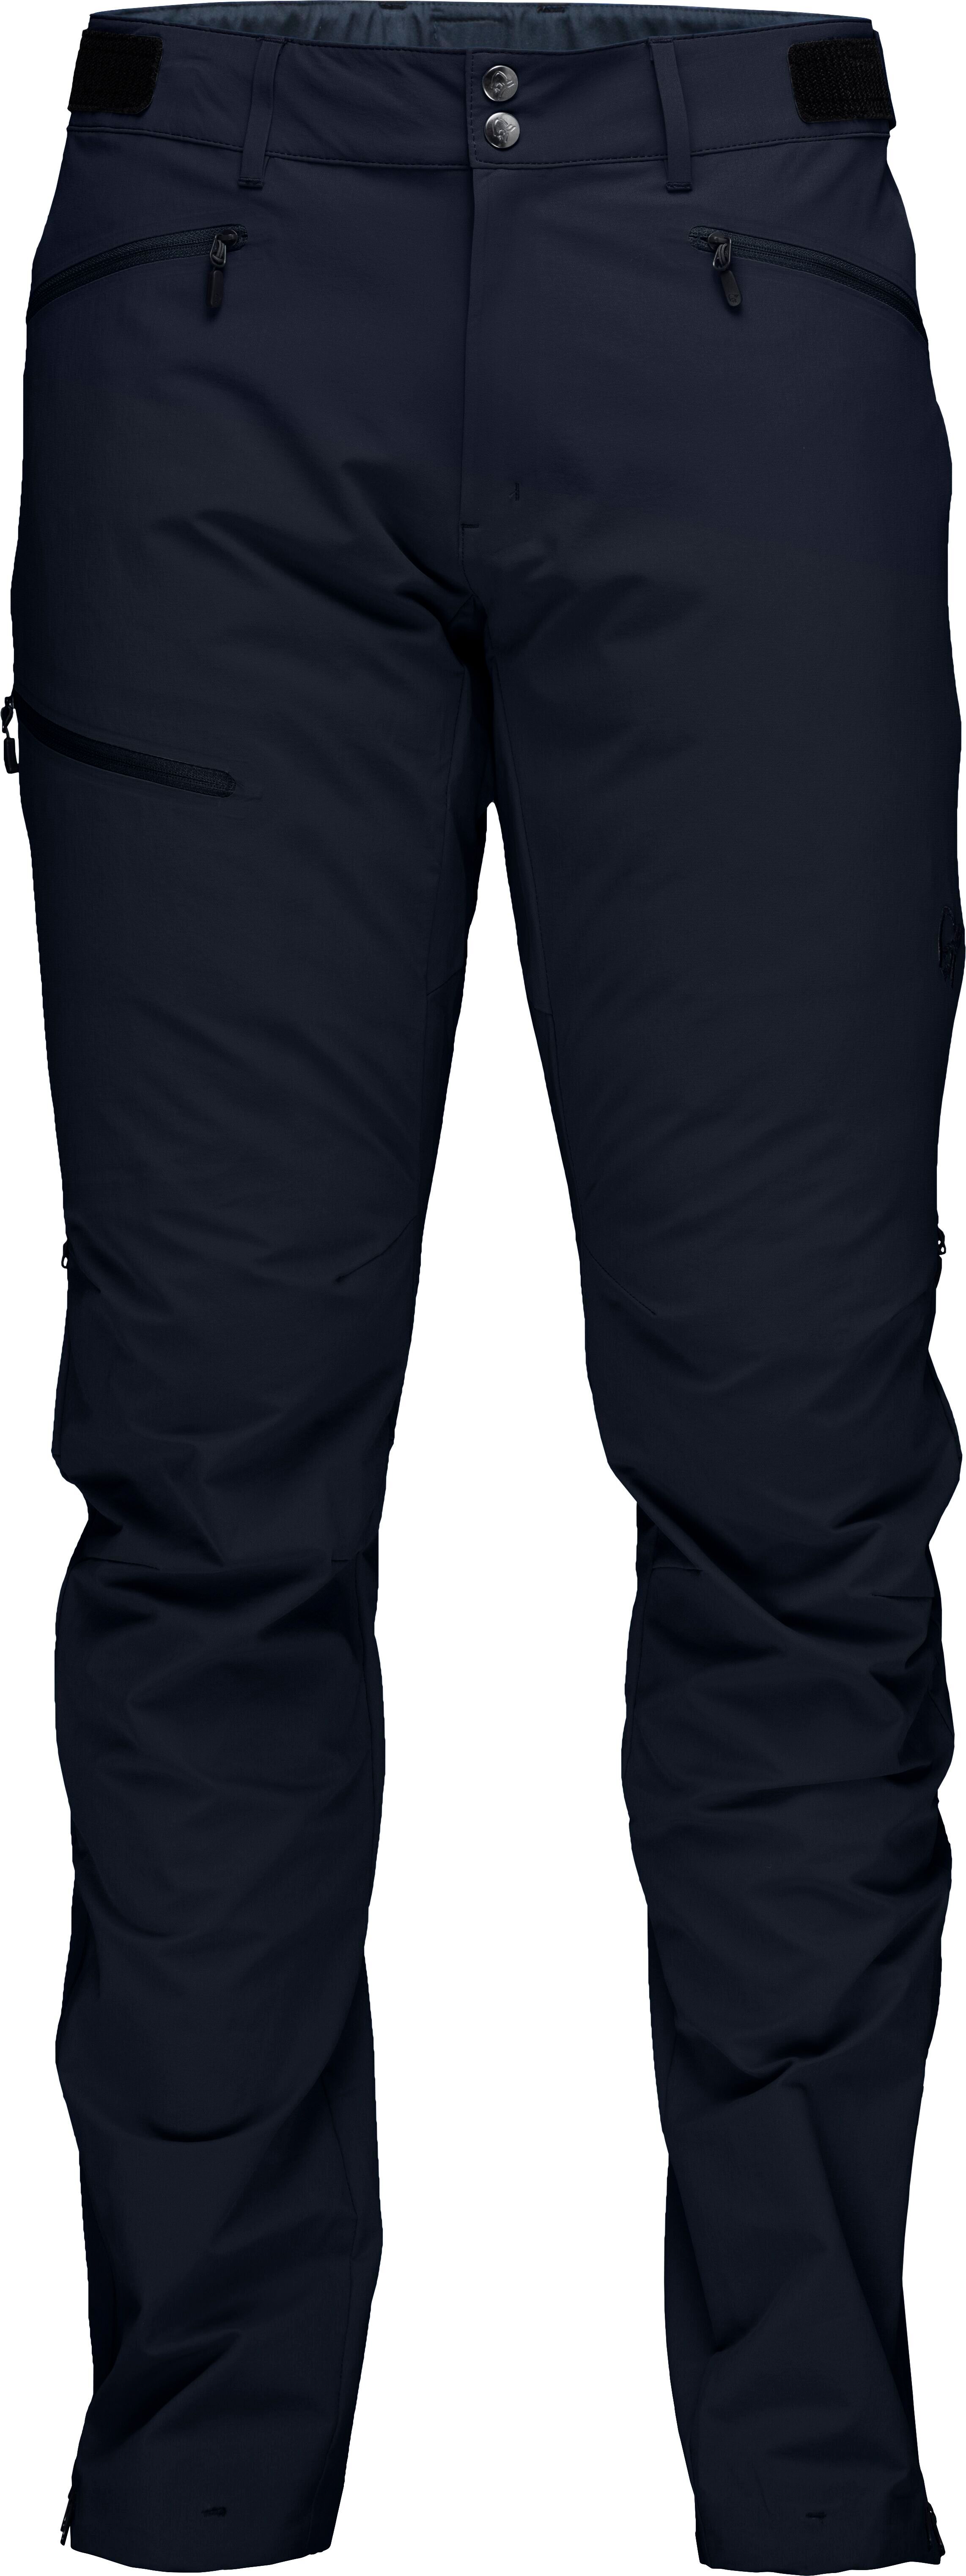 Nørrona Falketind Flex1 Pants - Softshell pants - Men's